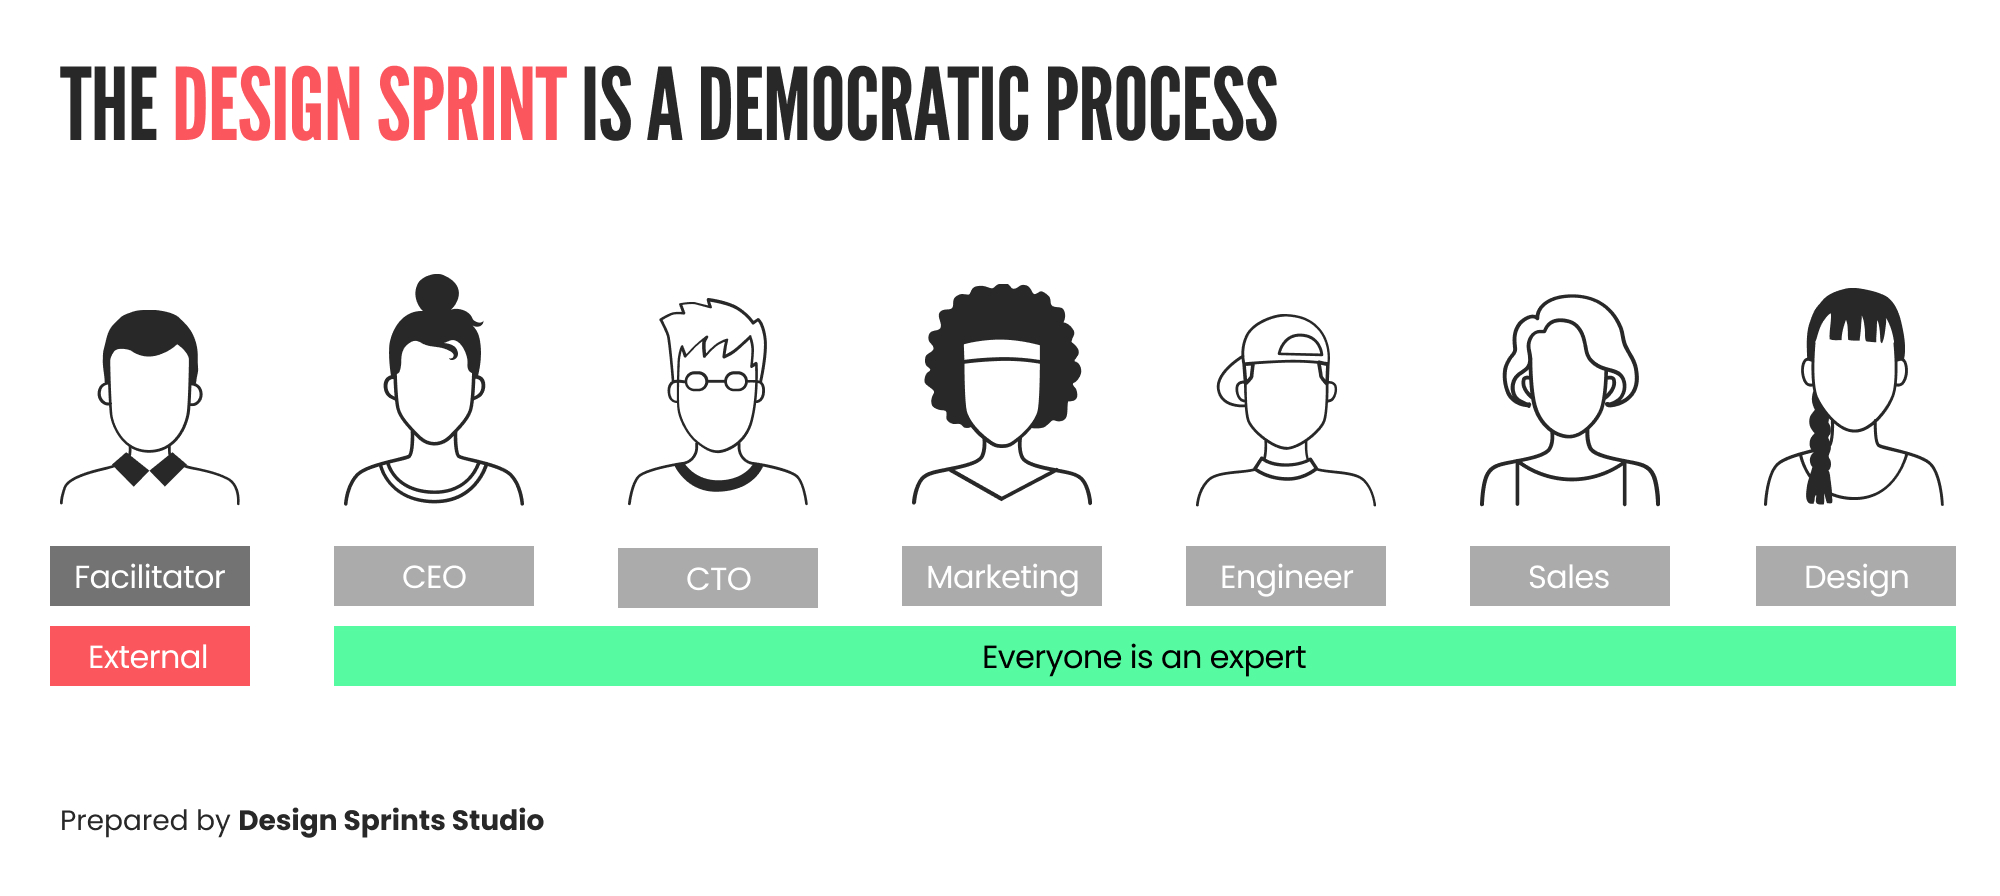 Design Sprint is a Democratic Process